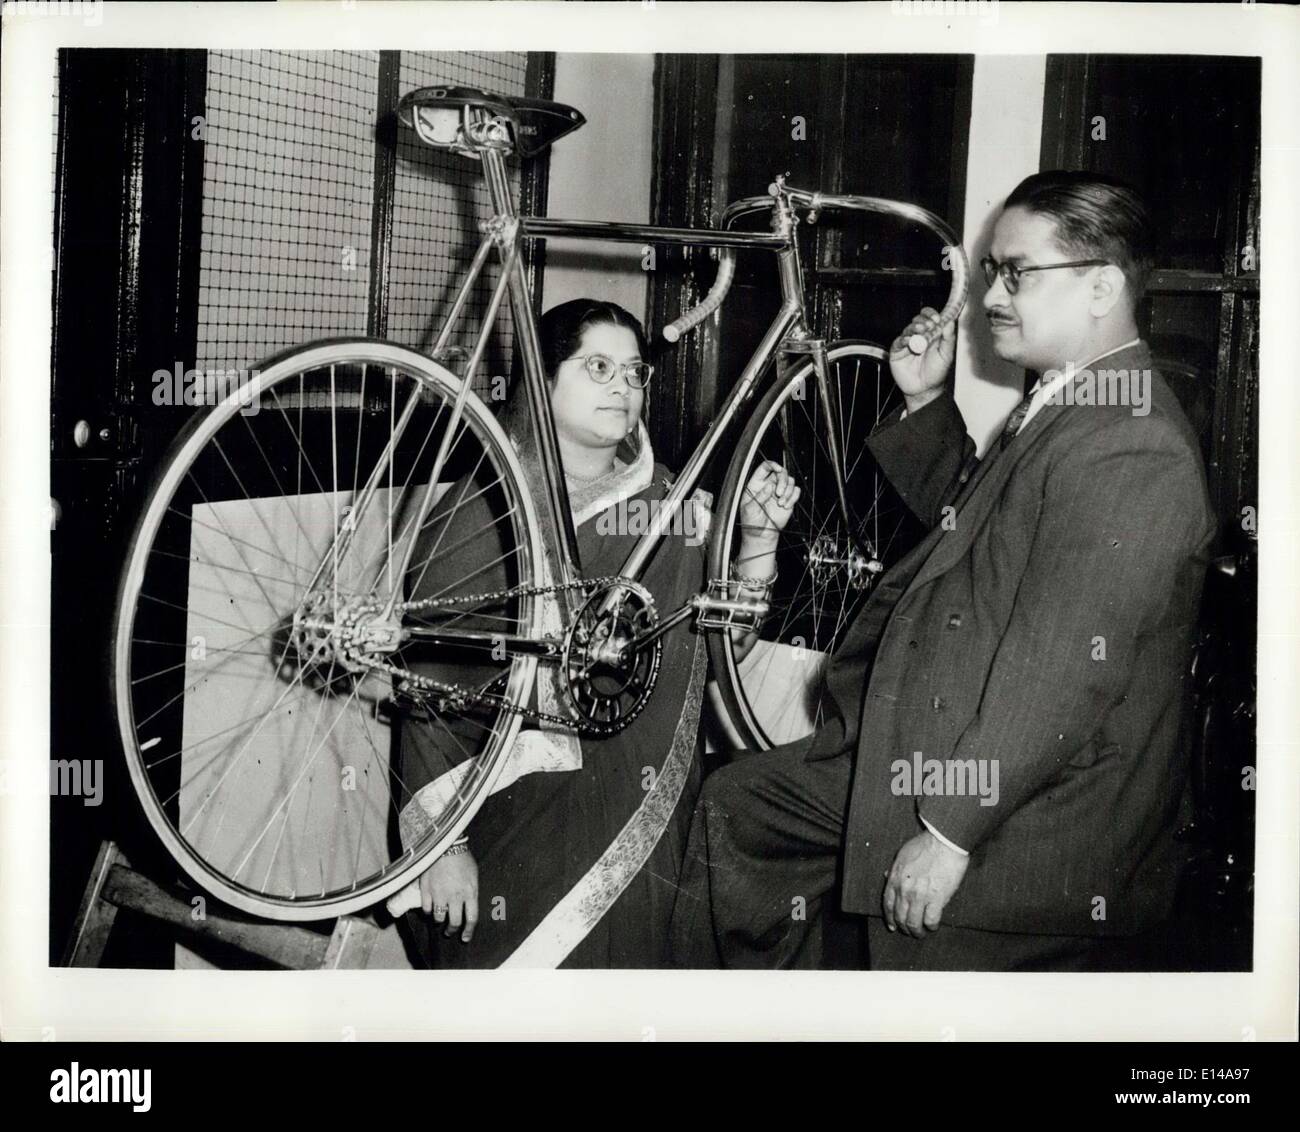 Le 17 avril 2012 - Le vélo : plaqué or La Grande-Bretagne, depuis longtemps reconnu comme l'un des principaux fabricants de bicyclettes, a reçu récemment une demande inhabituelle lorsque M. et Mme Jamindar Das Nundy de Calcutta, Inde, a ordonné un gold-plated vélo comme cadeau d'anniversaire pour leurs 18 ans, fils, un passionné de course. Complètement, même pour les rayons et de la chaîne, avec l'or 18 carats, avant d'atteindre le Calcutta location aura coûté Mr.Nundy l'équivalent de 60. Photo montre M. et Mme Jamindar Das Nundy examiner les vélos dorés à l'usine de ses fabricants, le Claude Butler Bicyclettes Co Banque D'Images